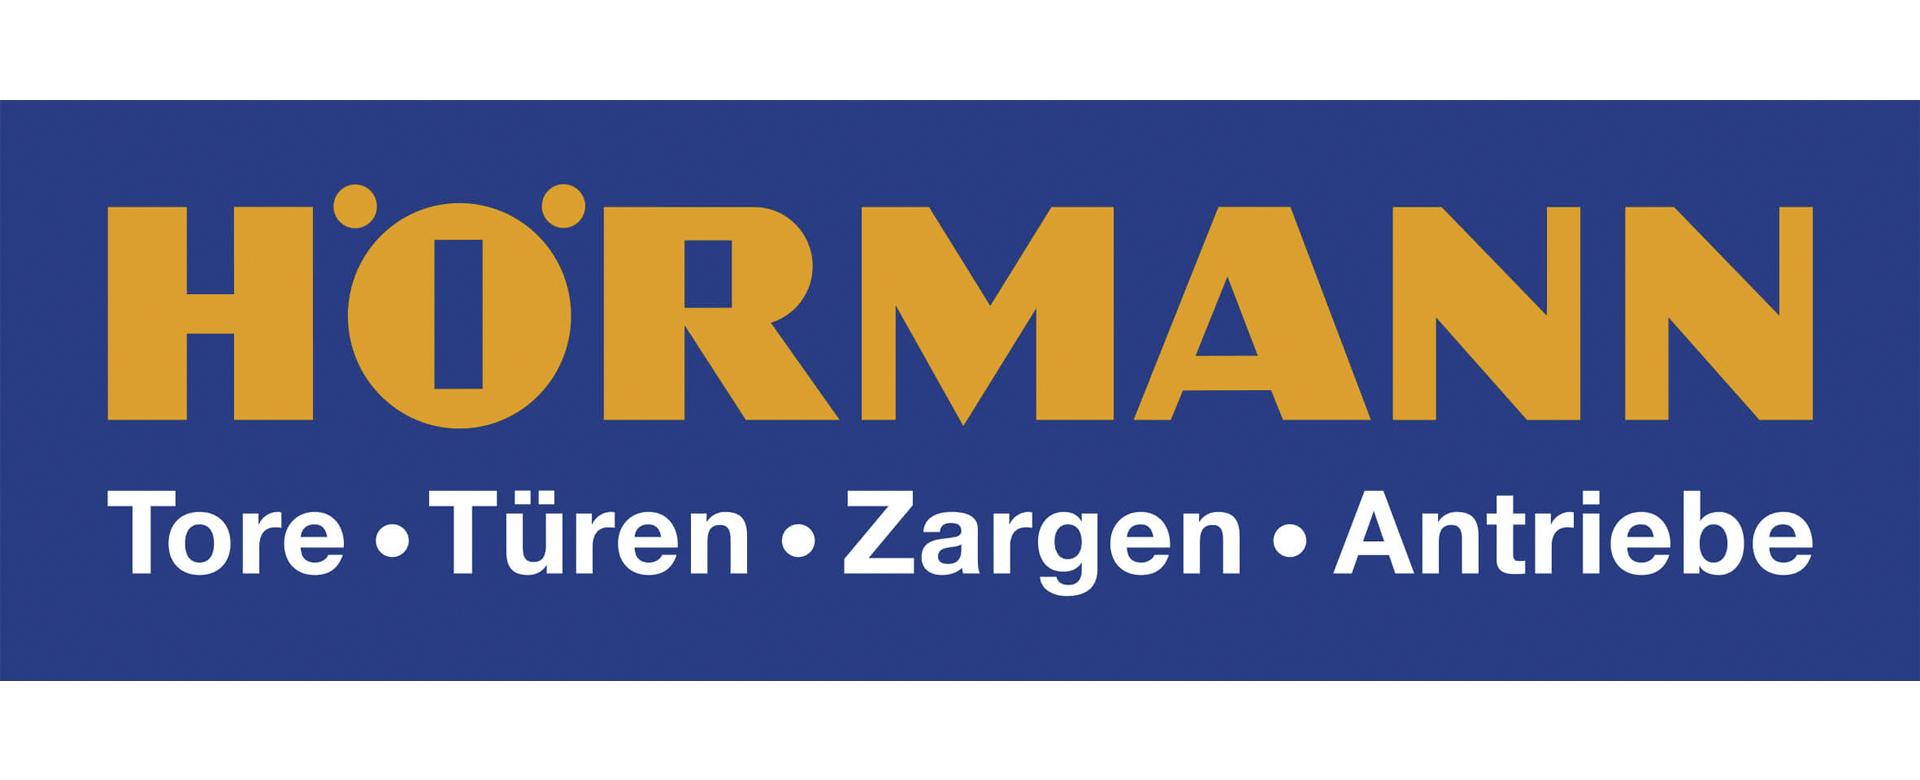 Metallbau Eggert GmbH & Co. KG - Wir sind Vertragshändler von Hörmann Tore!